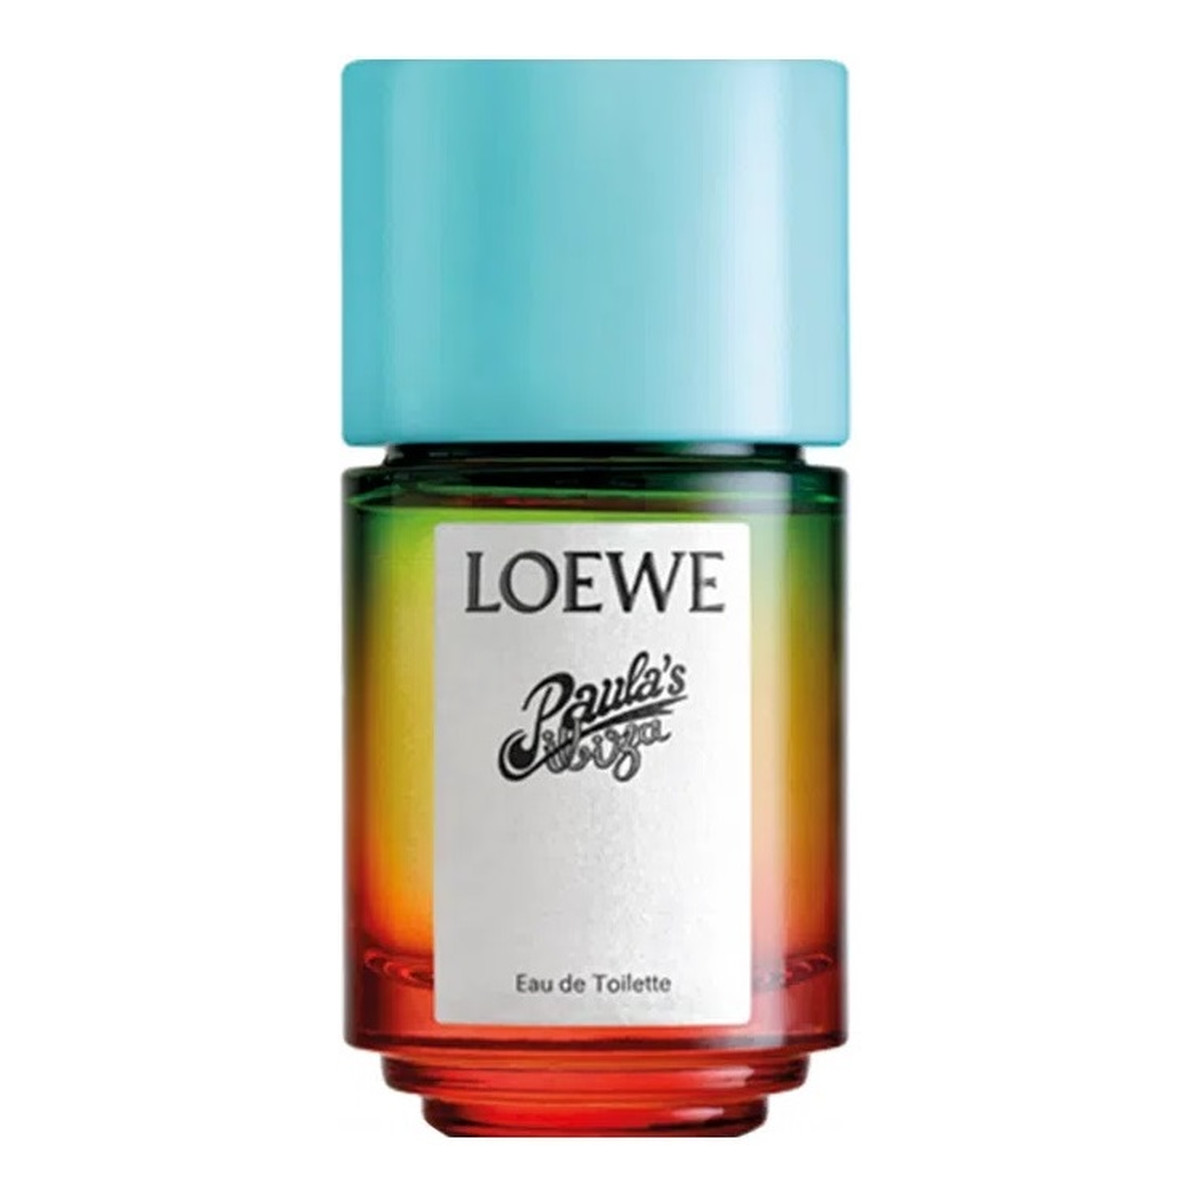 Loewe Paula's Ibiza Woda toaletowa spray 50ml